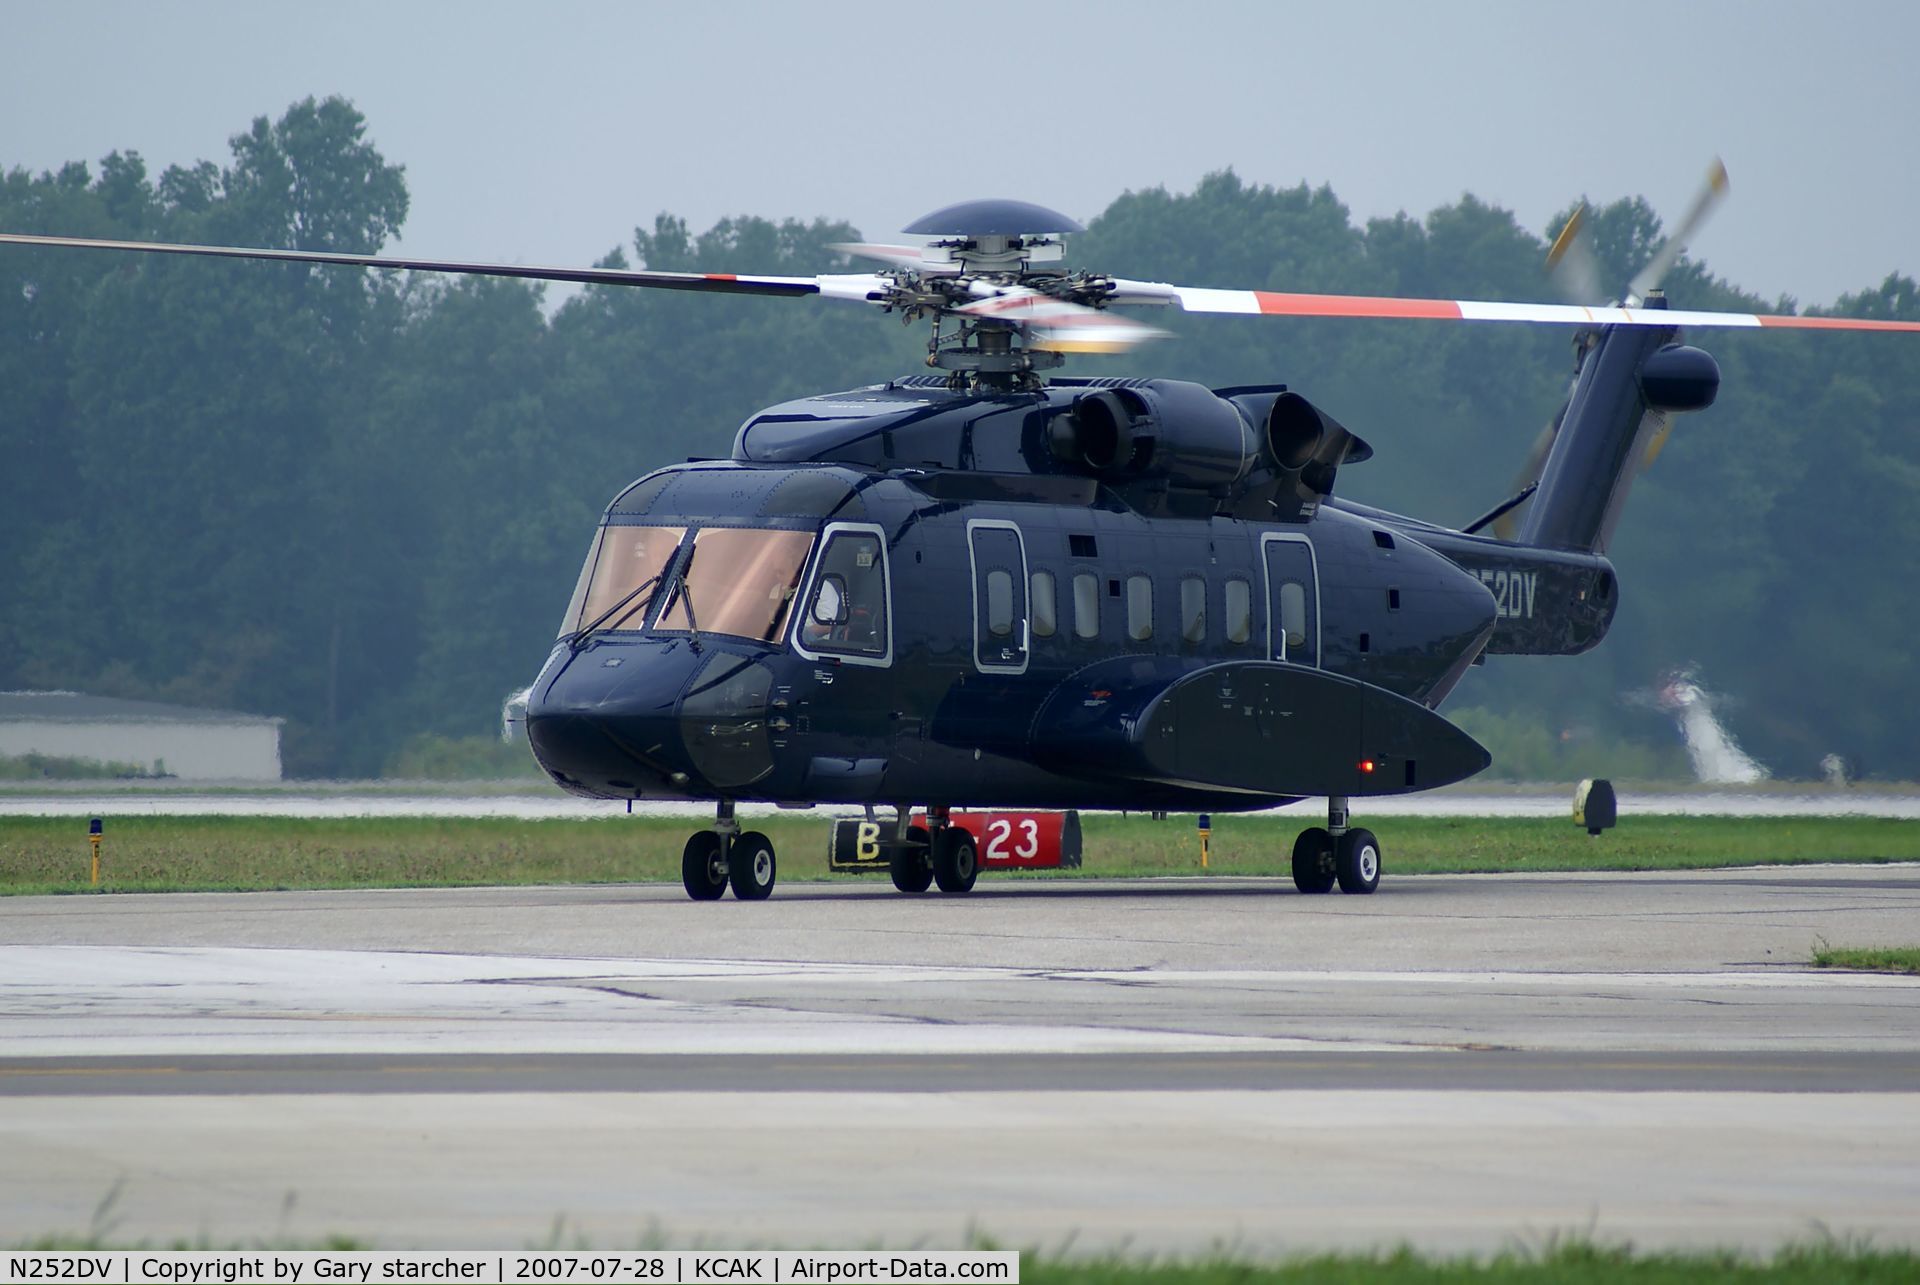 N252DV, 2004 Sikorsky S-92A C/N 920009, just landing